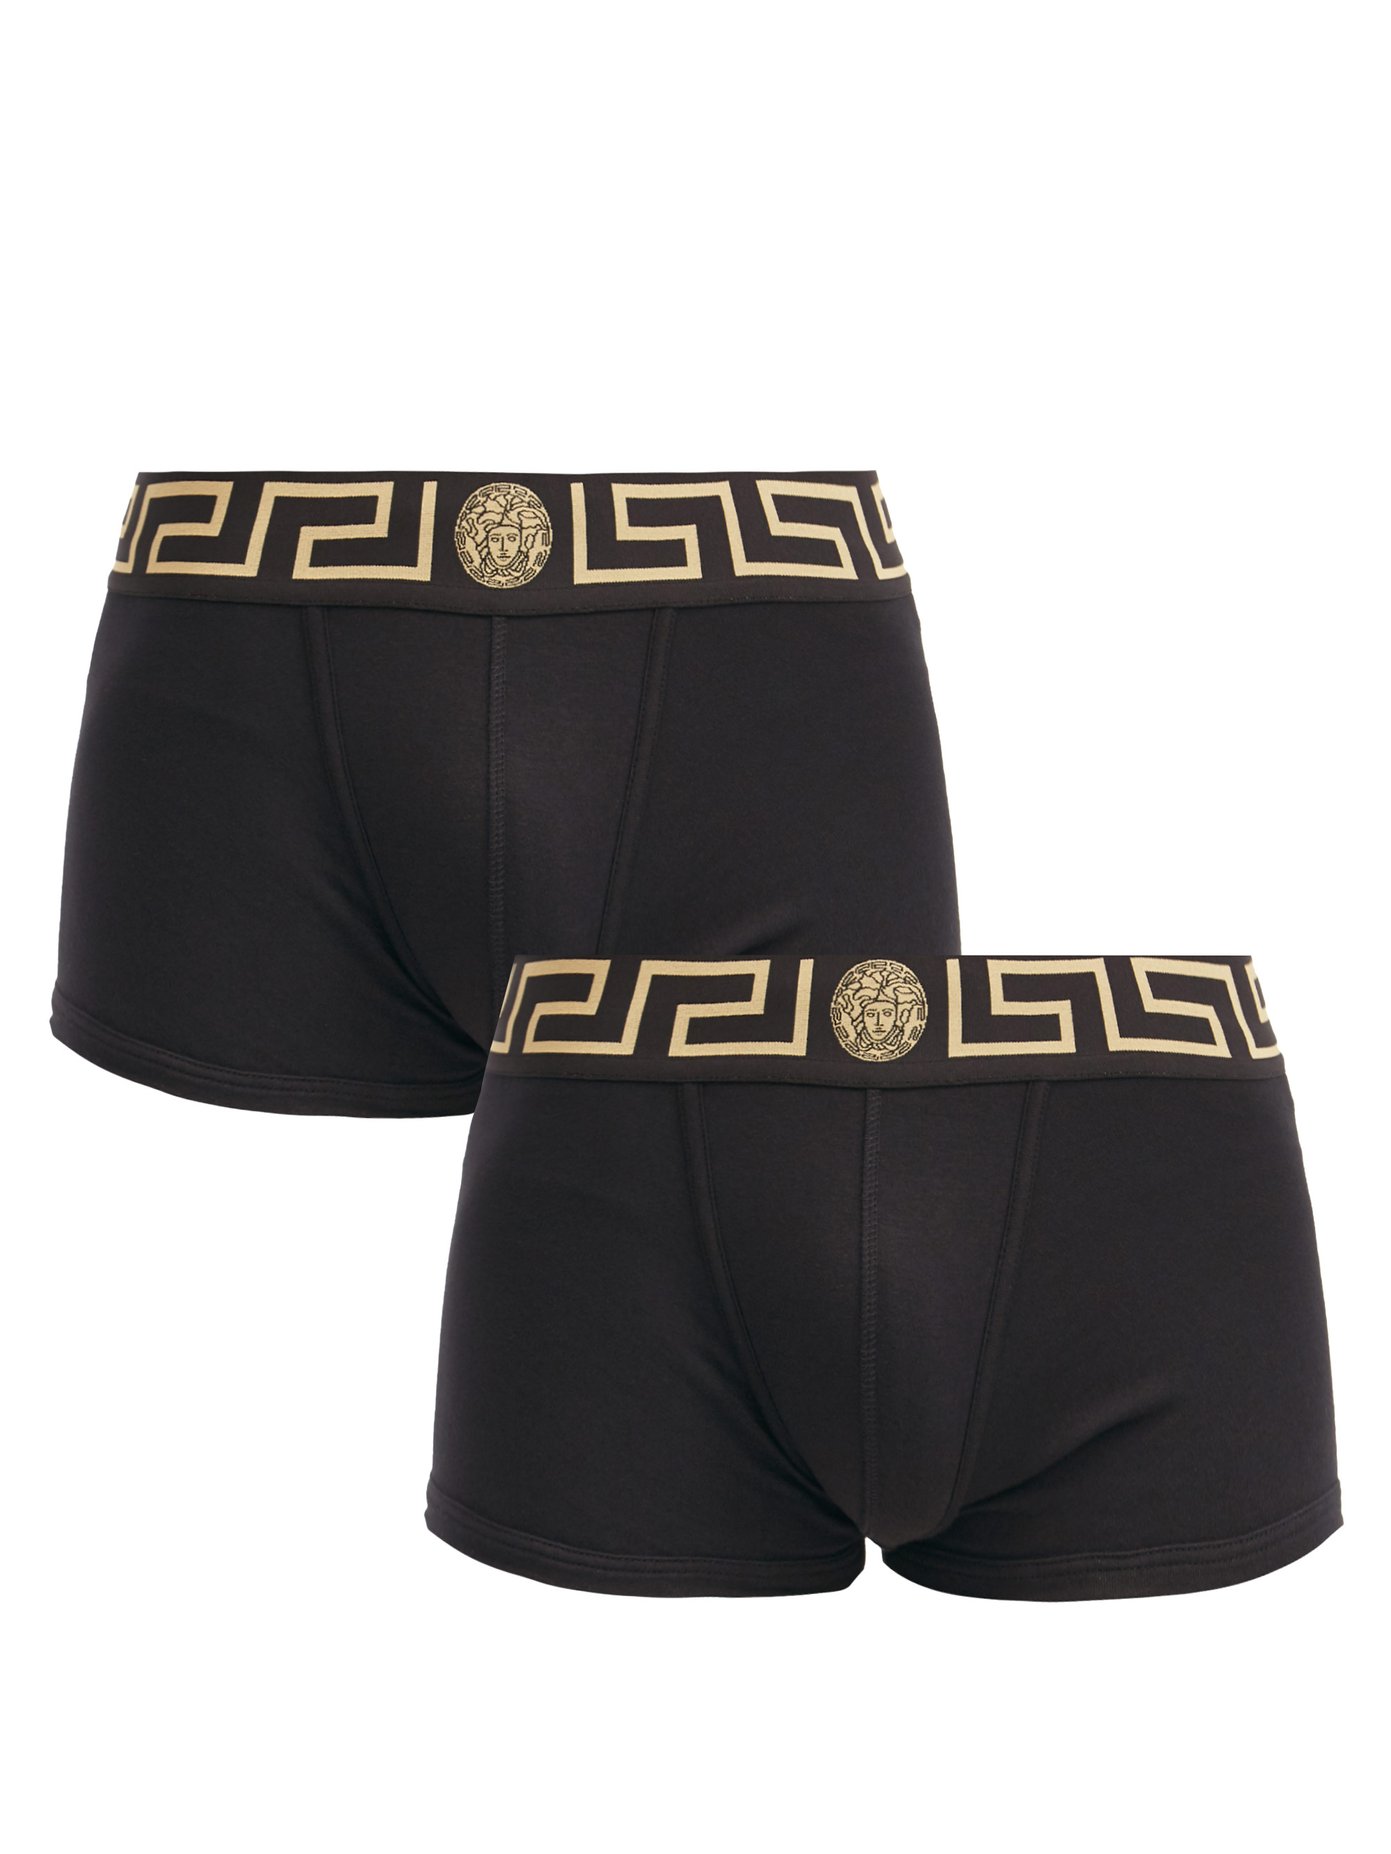 versace underwear pack